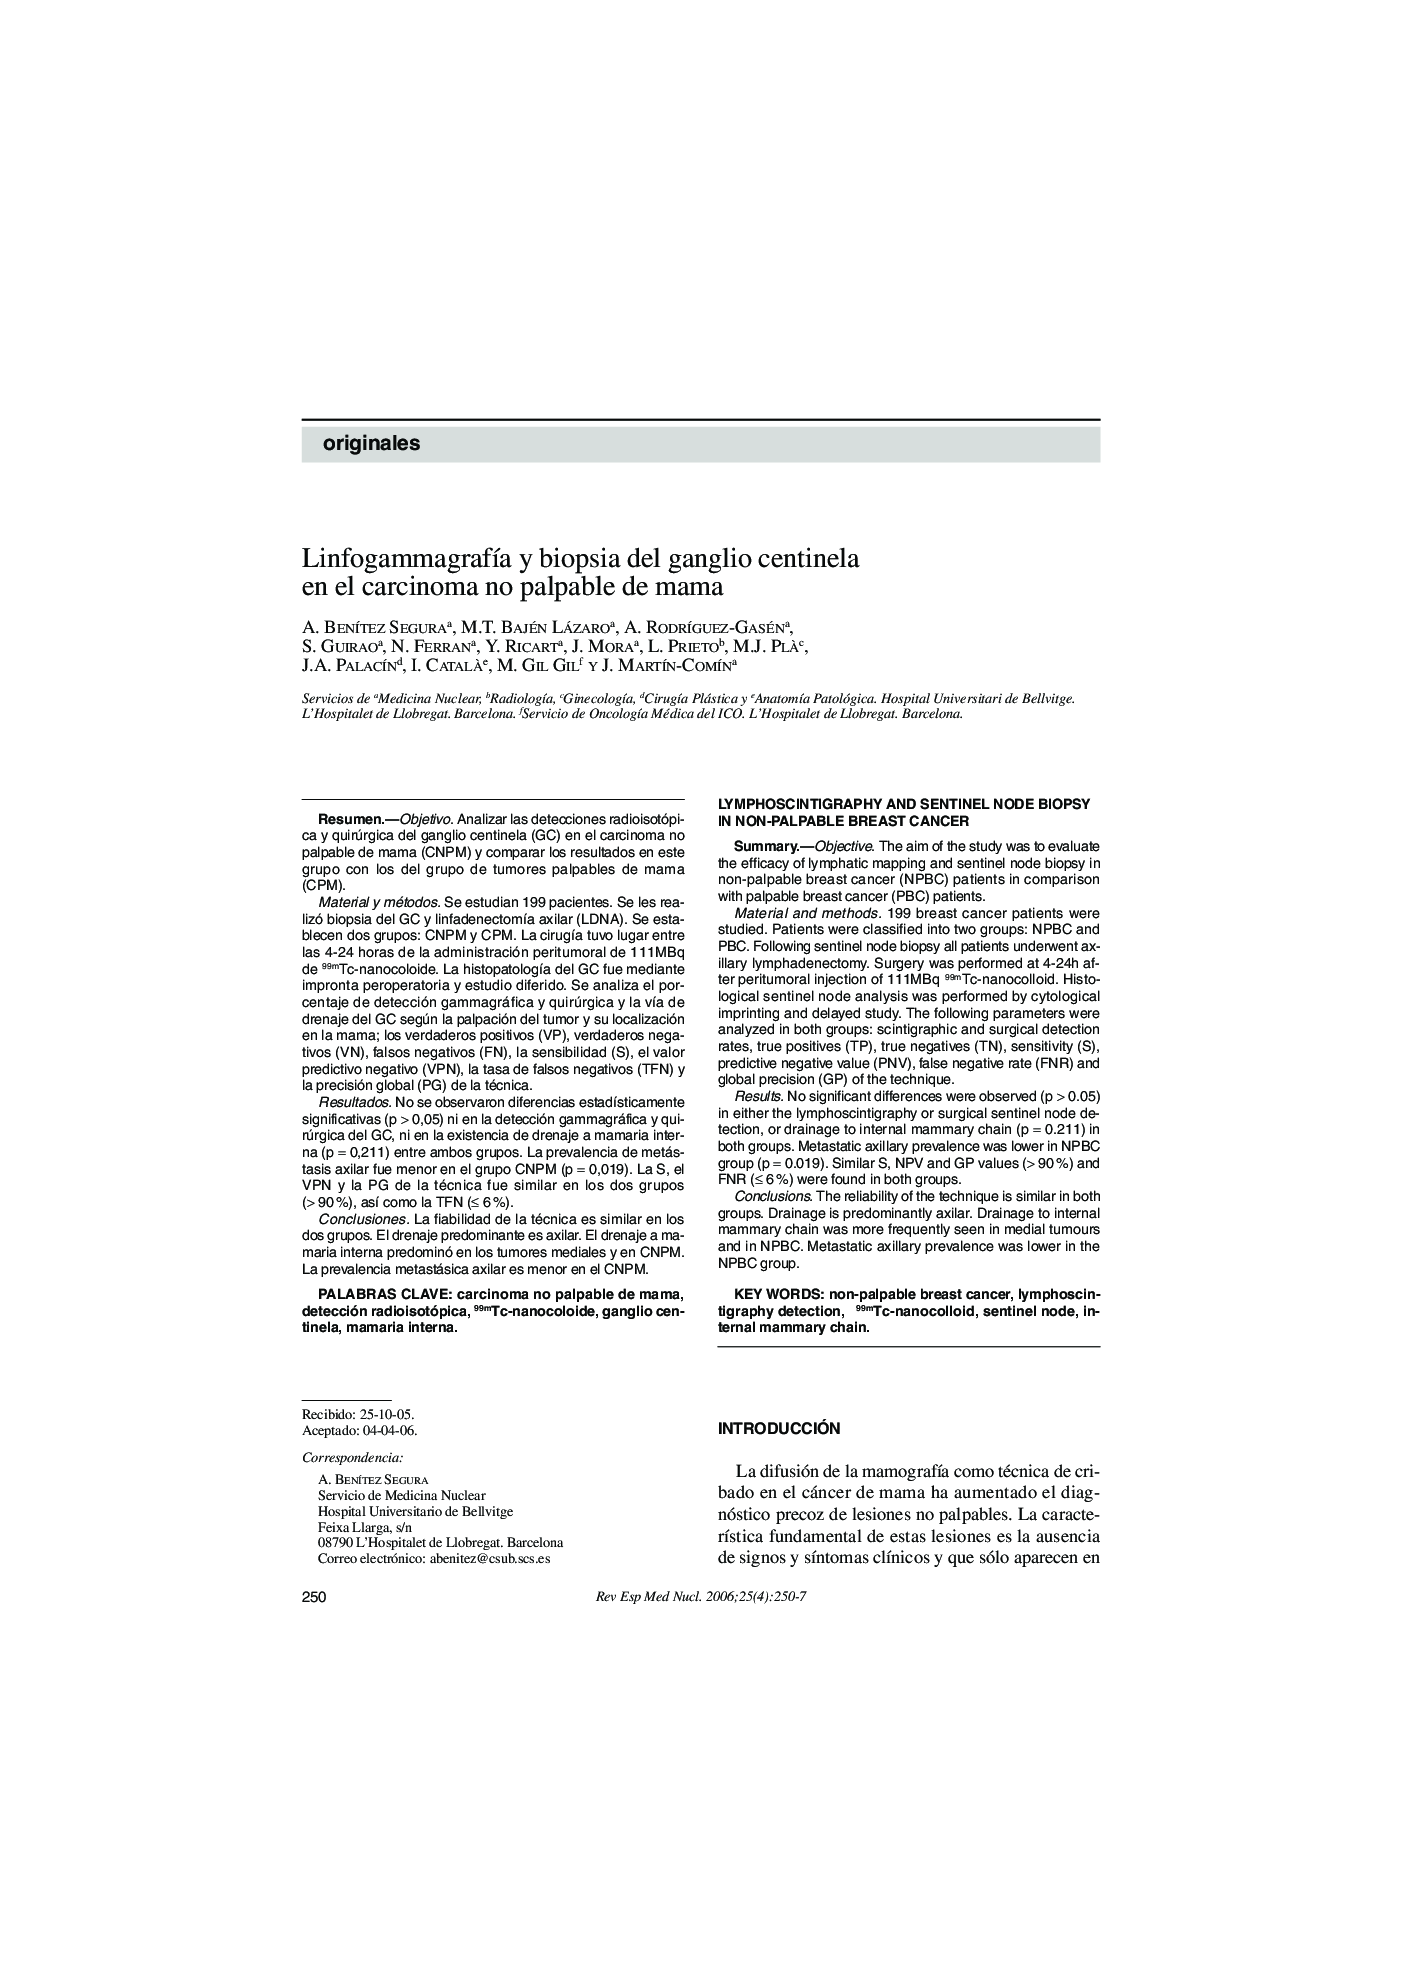 LinfogammagrafÃ­a y biopsia del ganglio centinela en el carcinoma no palpable de mama